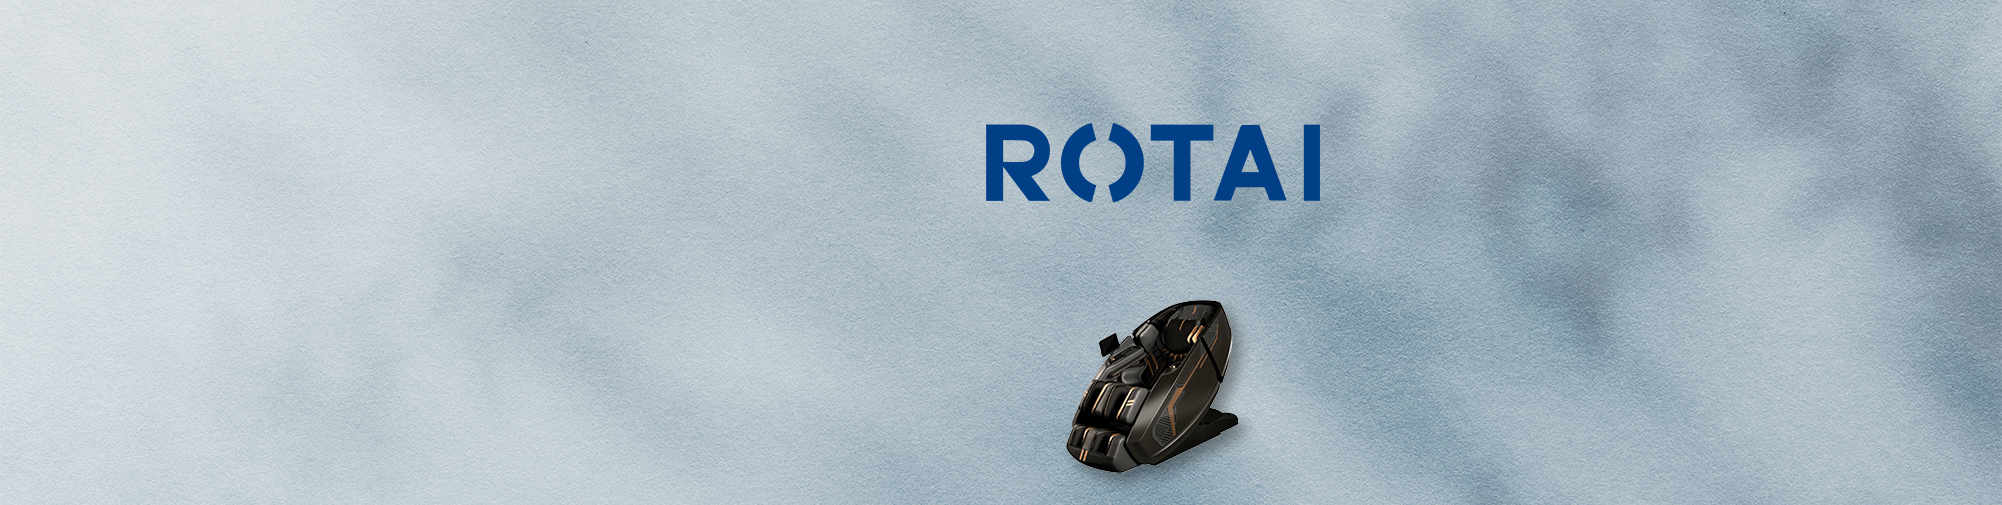 ROTAI｜マッサージチェアの世界